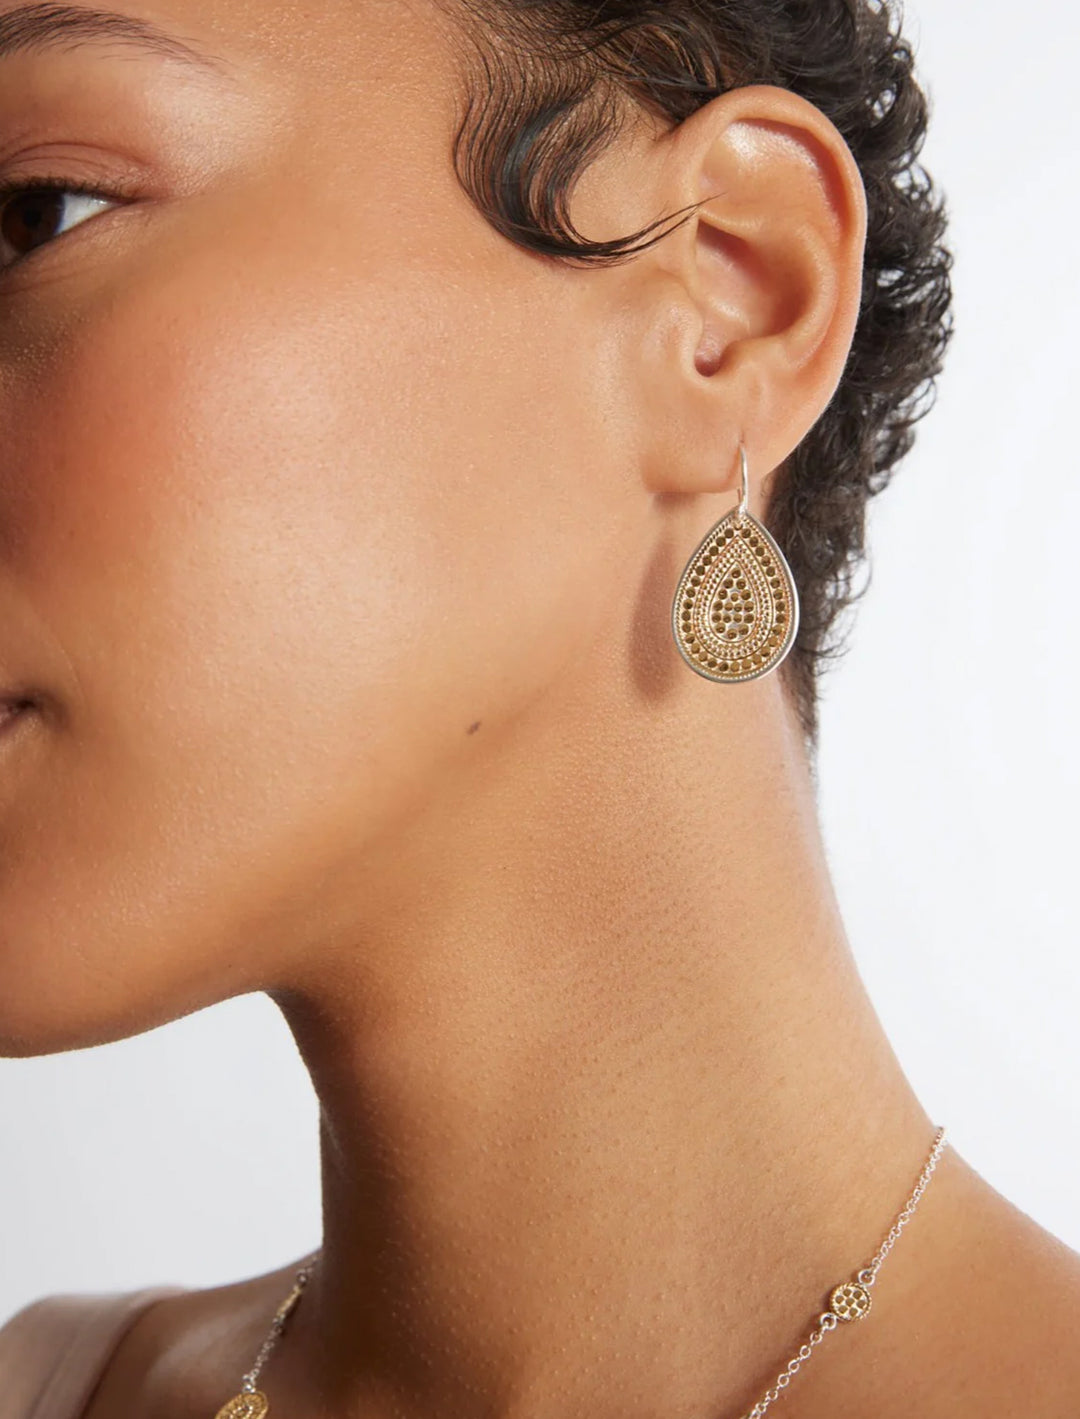 teardrop earrings in gold